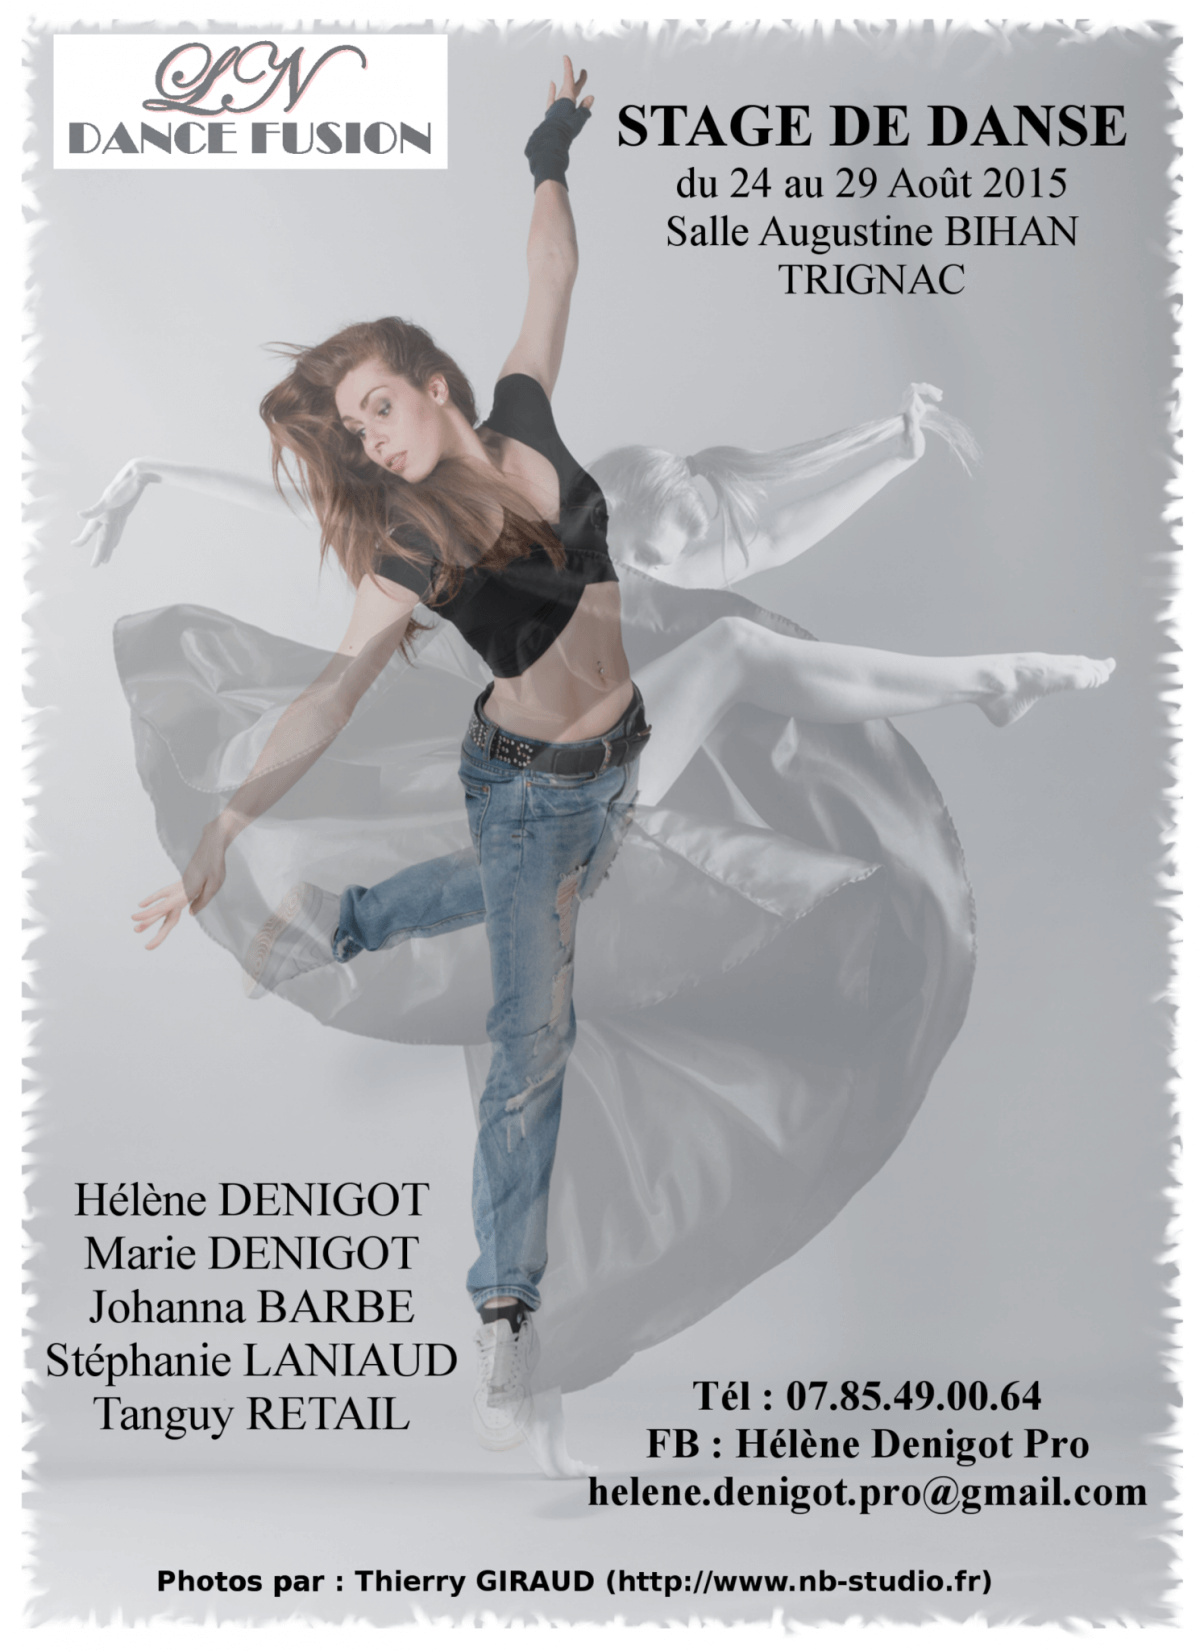 Affiche stage de danse LN Dance Fusion à Trignac